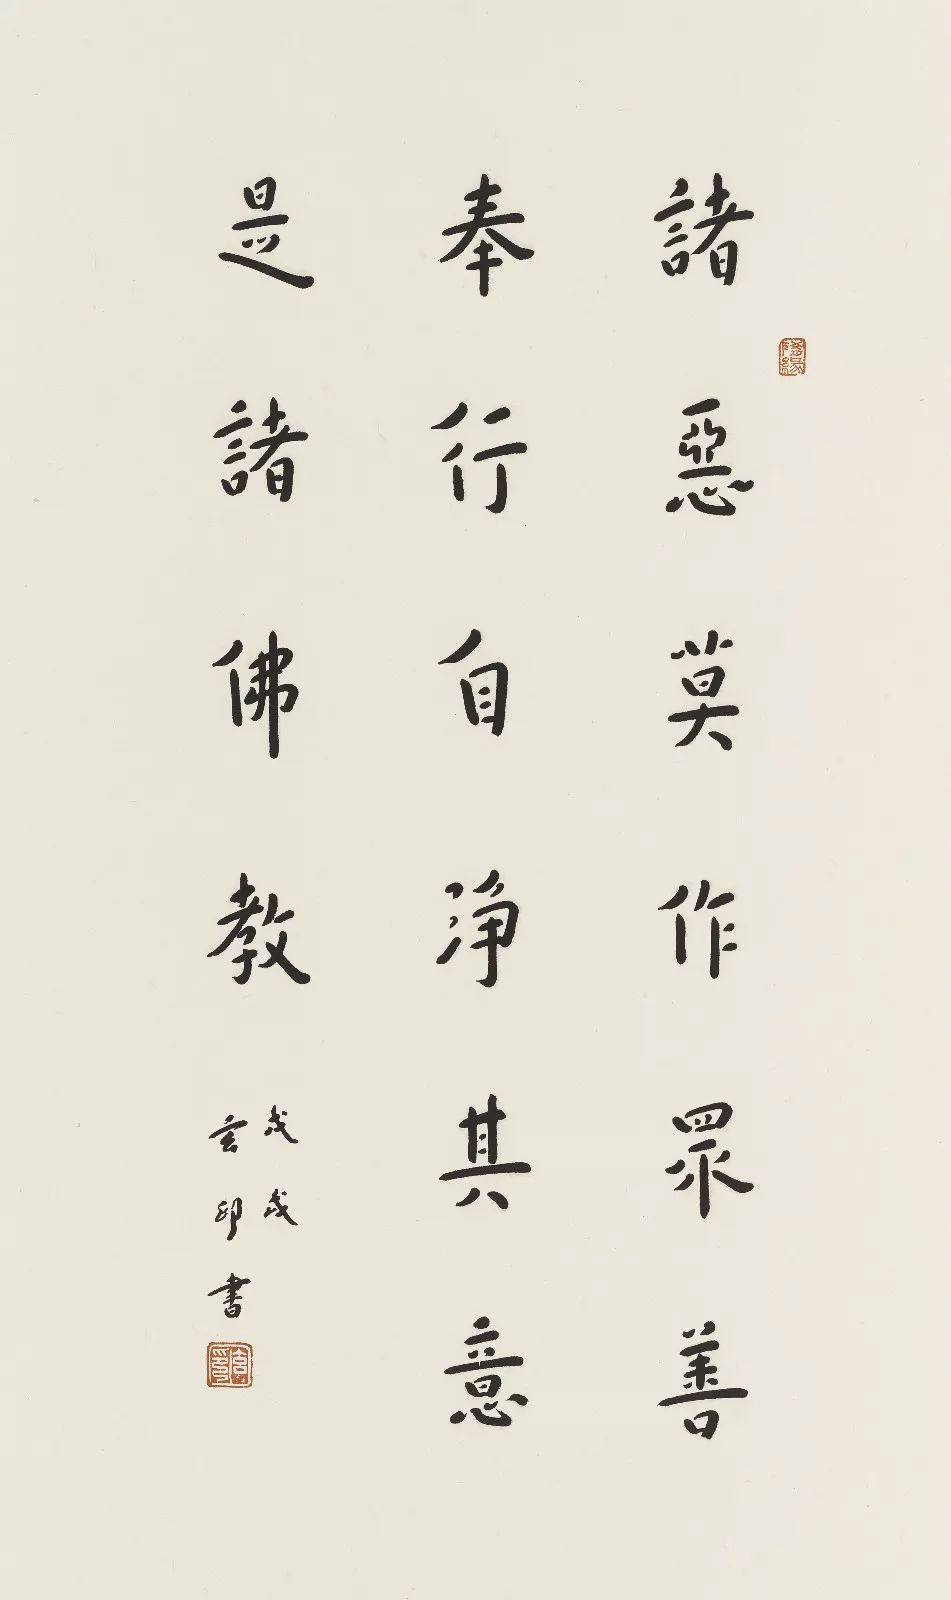 慧镜无尘——玄印·吕少卿书画展11月11日在南京鸡鸣寺举行